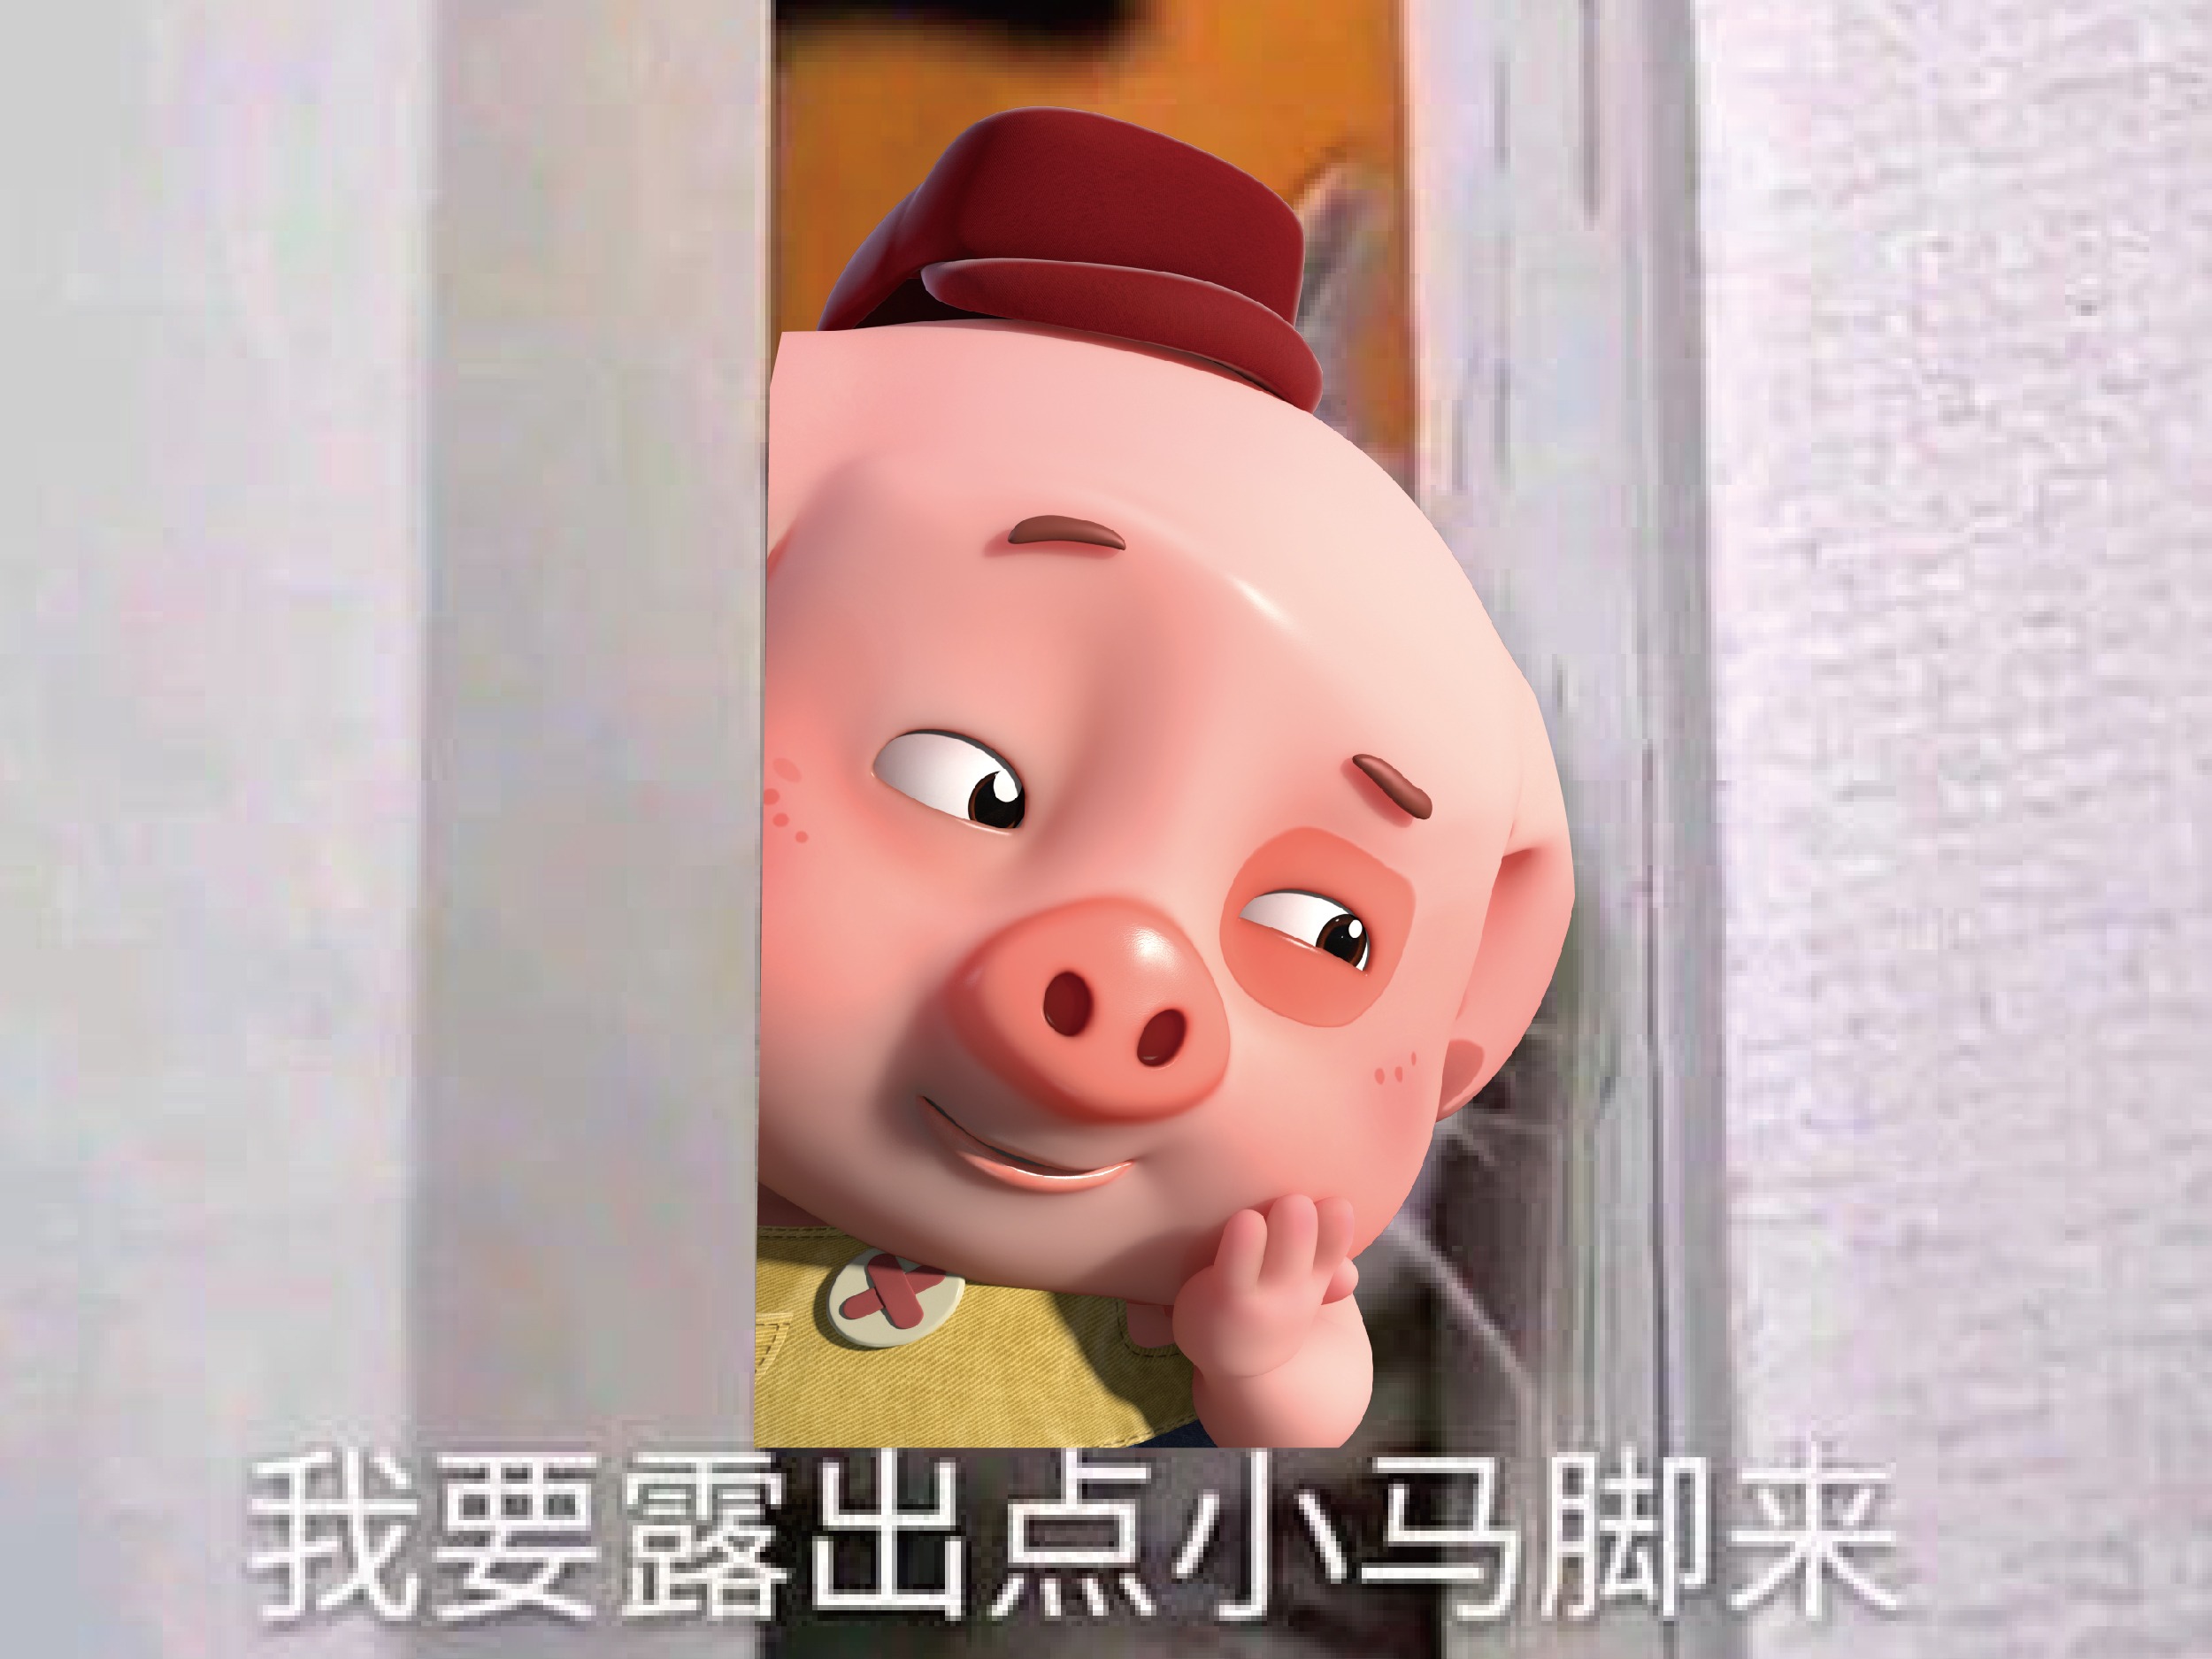 袁峰日记:国画猪系列作品《俺老猪来了》《五福临门》《金猪纳福》《憨福图_兴艺堂